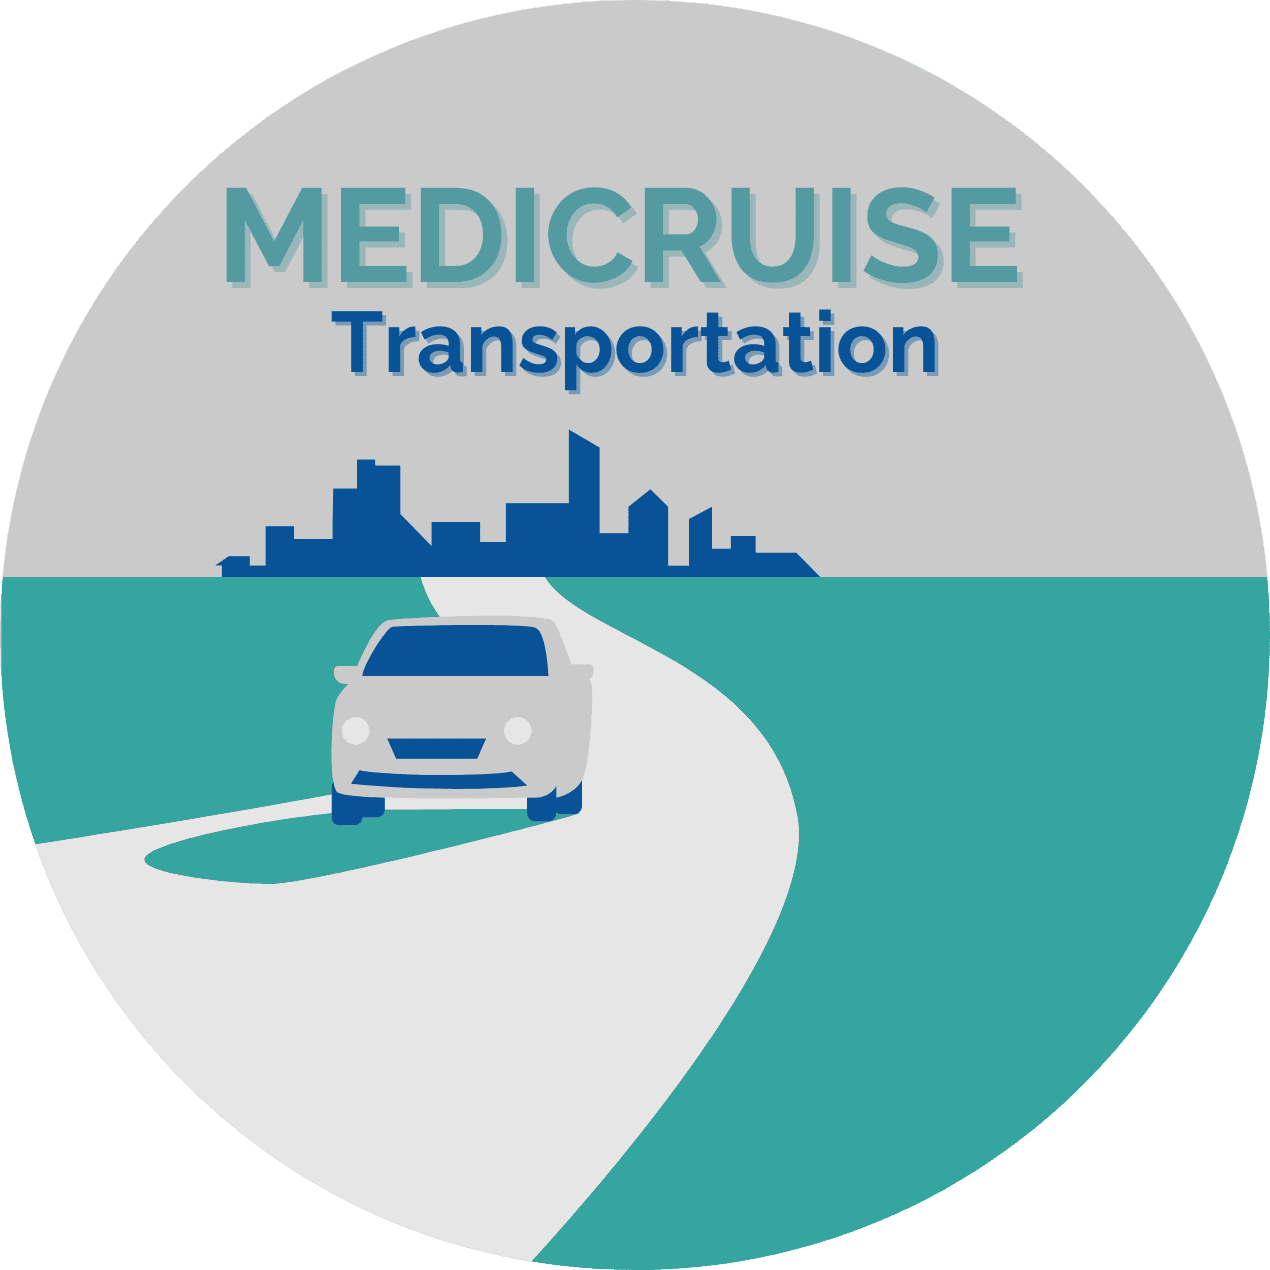 Medicruise Transportation